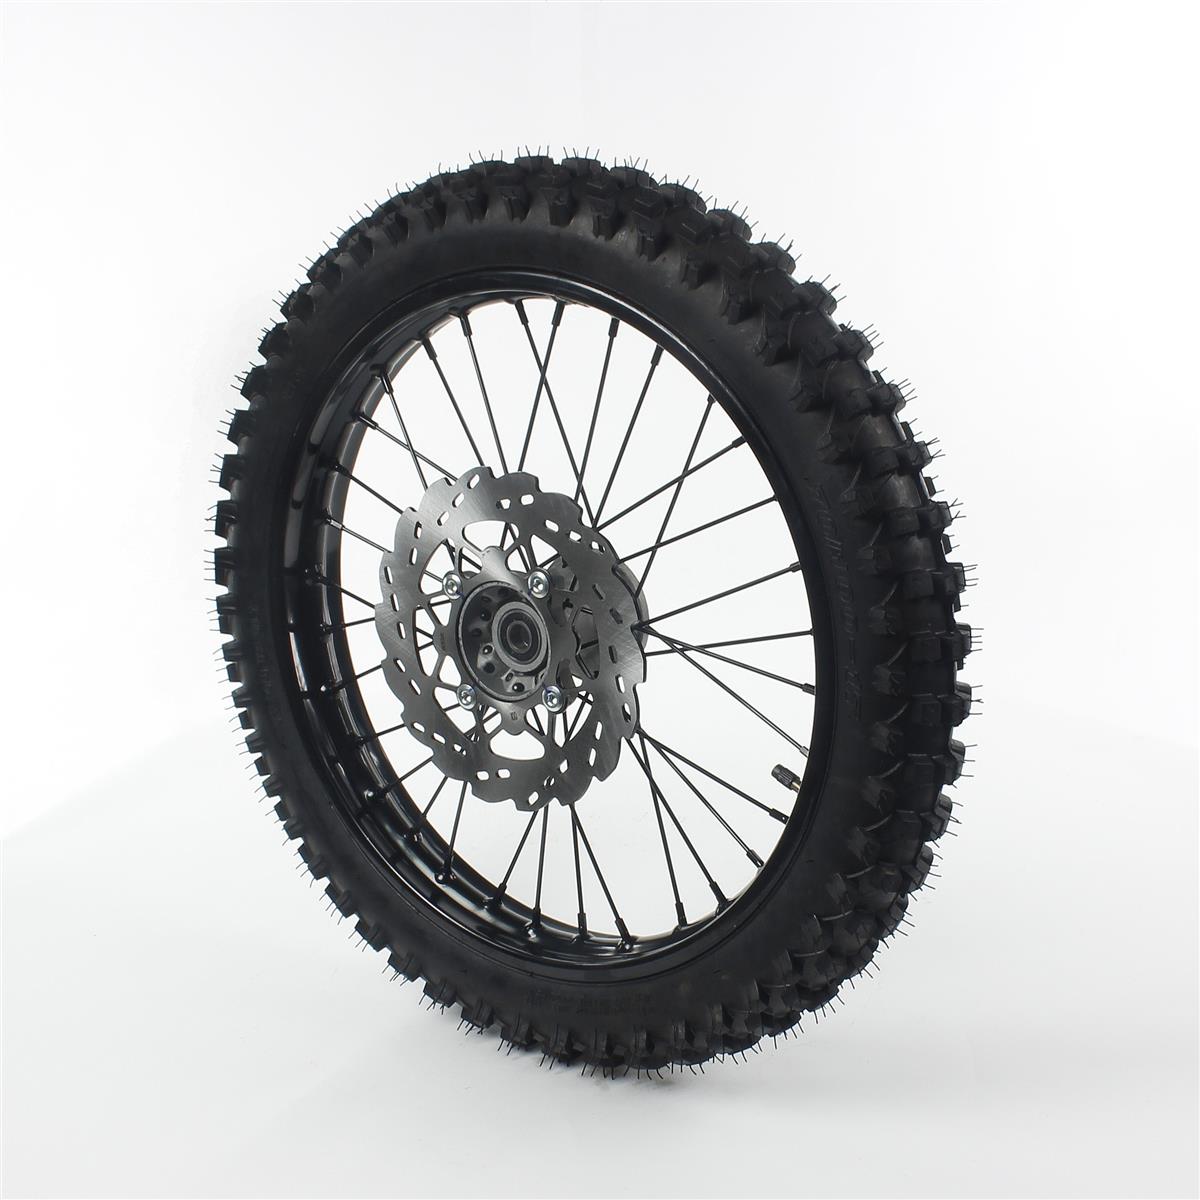 roue-complete-avant-acier-avec-pneu-guangli-noire-17-15-minimoto-dirtbike